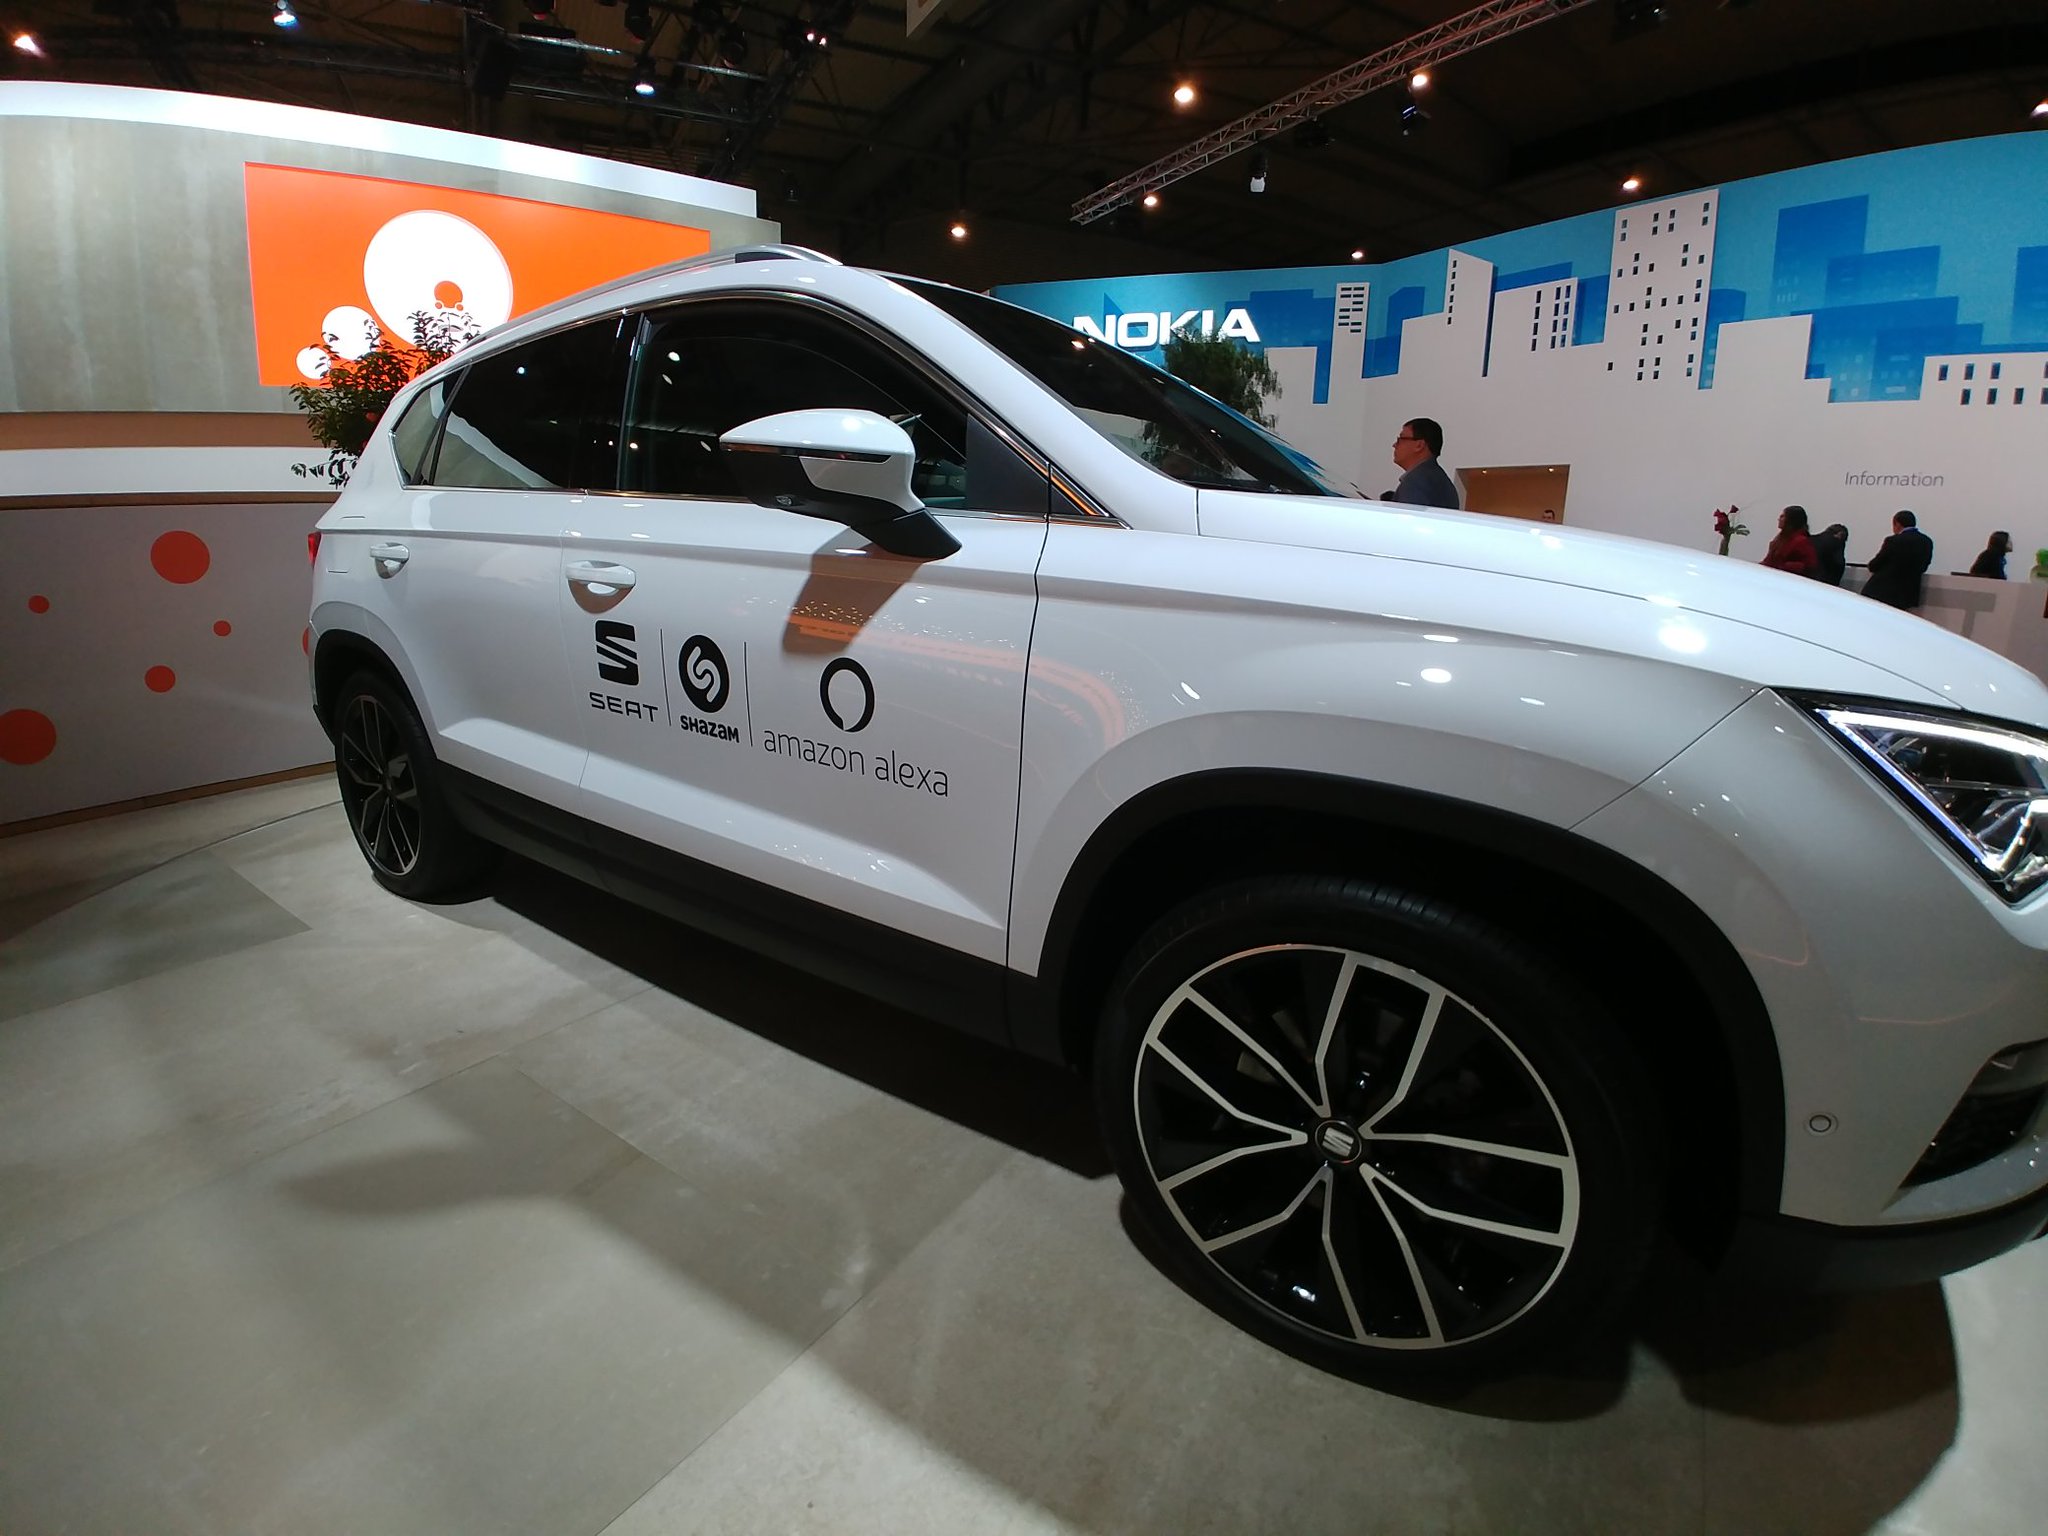 La firma española de autos SEAT integra el asistente de voz Amazon Alexa en sus vehículos